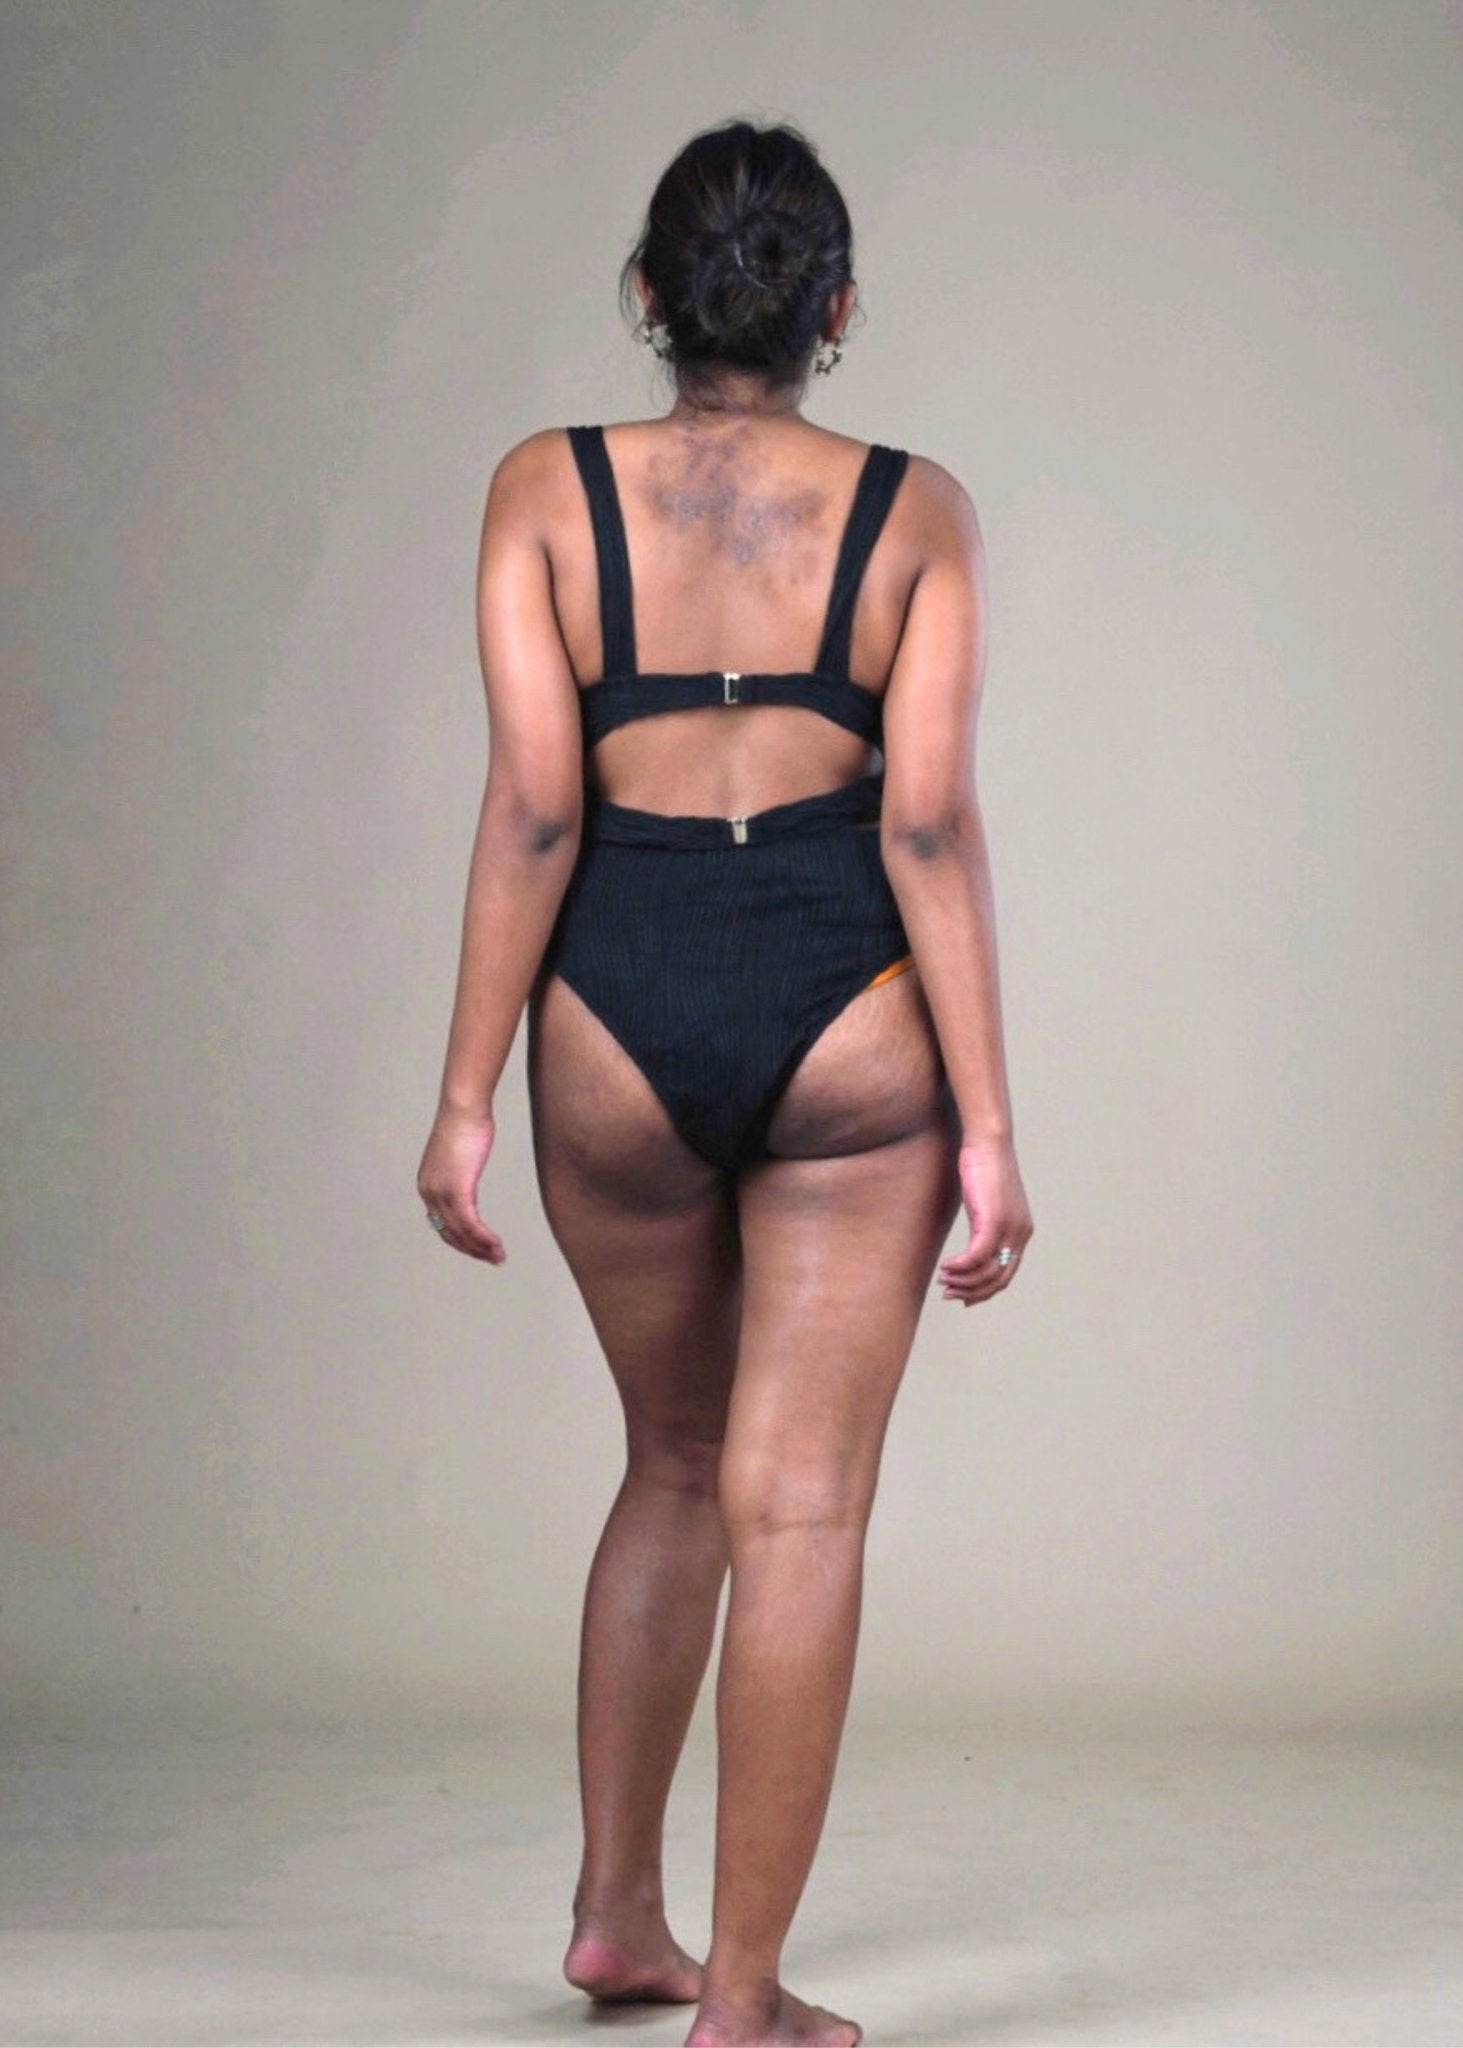 Black Bikini with Wavy Texture - WomanLikeU